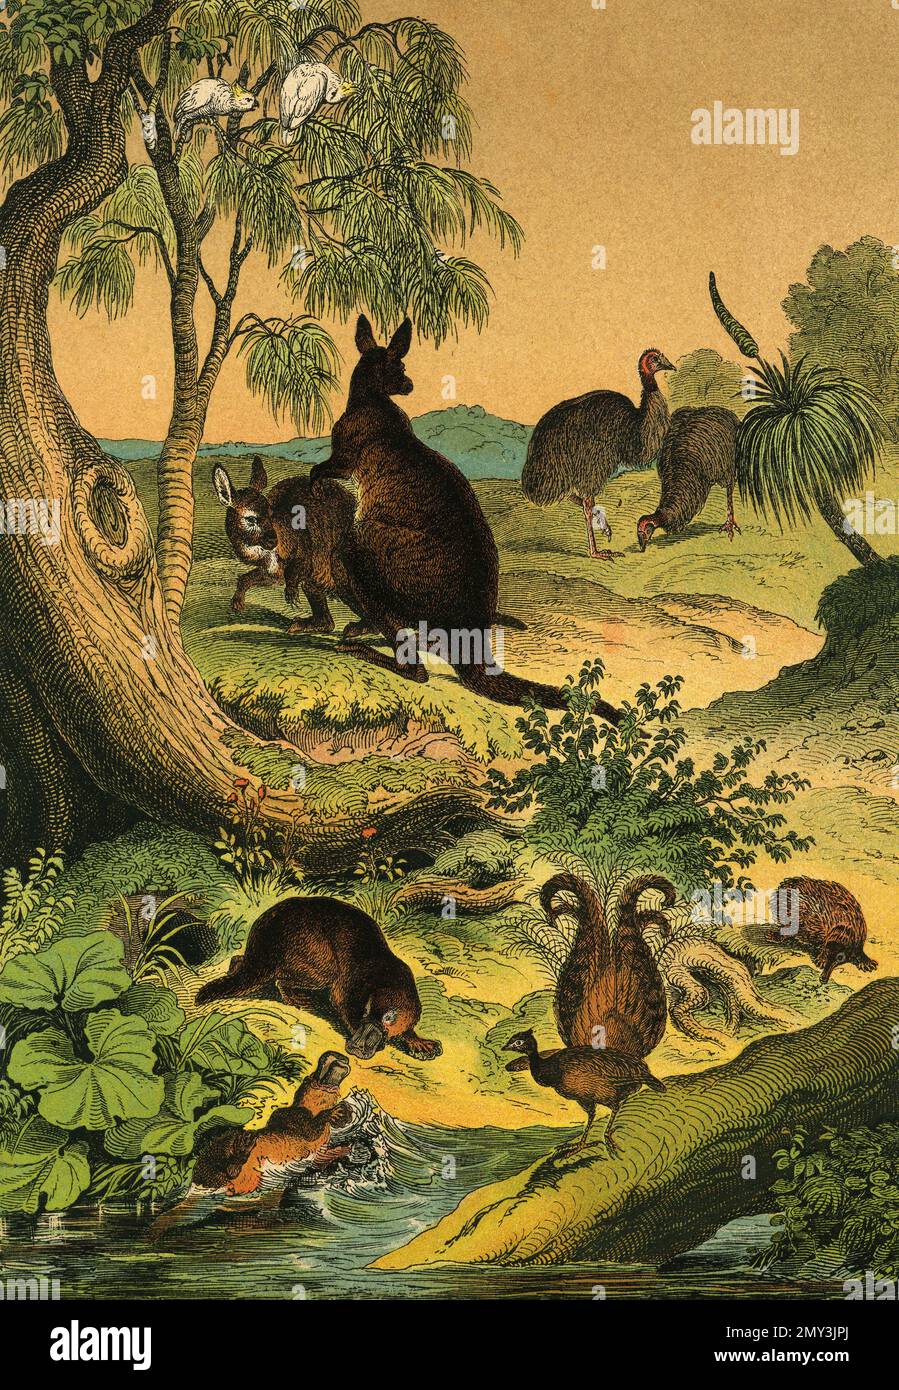 Tierwelt in Australien: Entenschnabeltier, Stachelameisenfresser, Lyre-Vogel, Emu und Känguru, Farbdarstellung, Das lehrreiche Bilderbuch von Adam White, 1868 Stockfoto